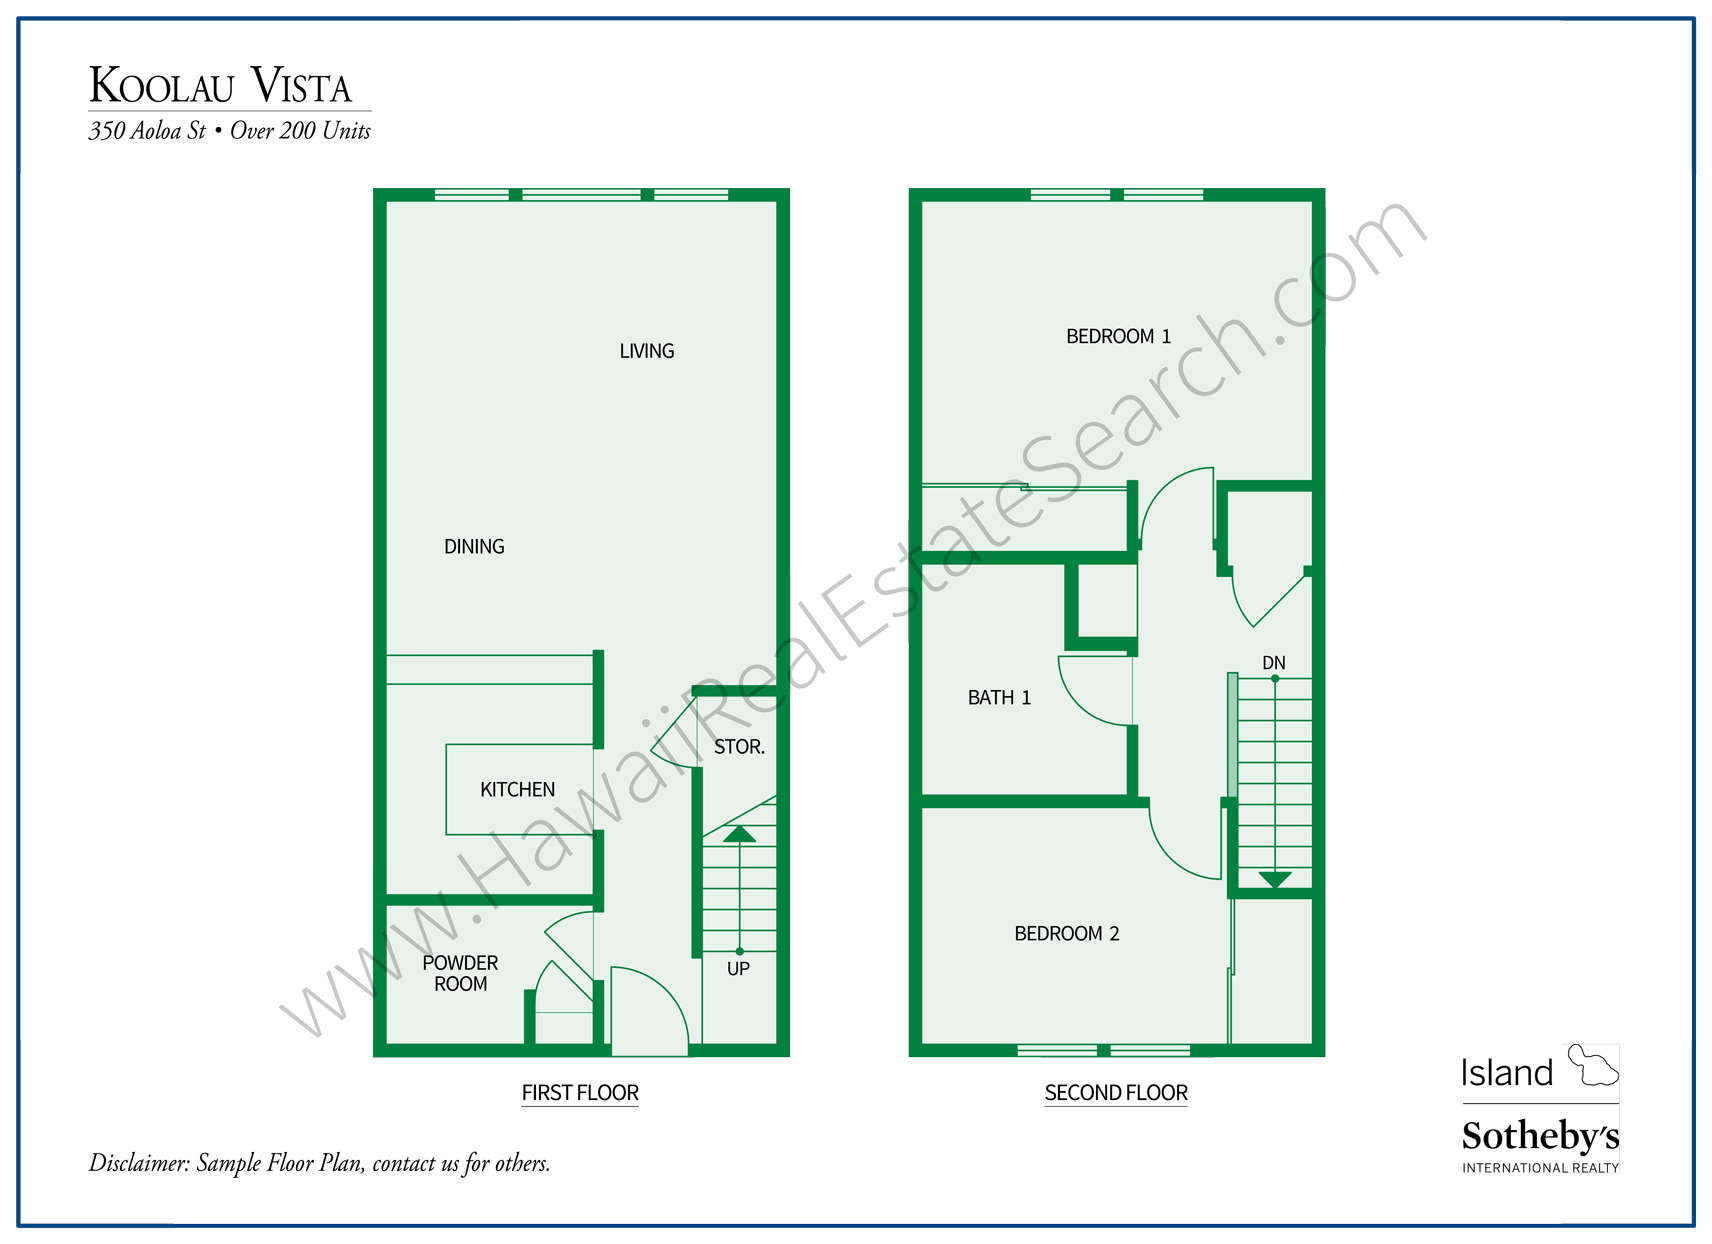 Koolau Vista Floor Plan